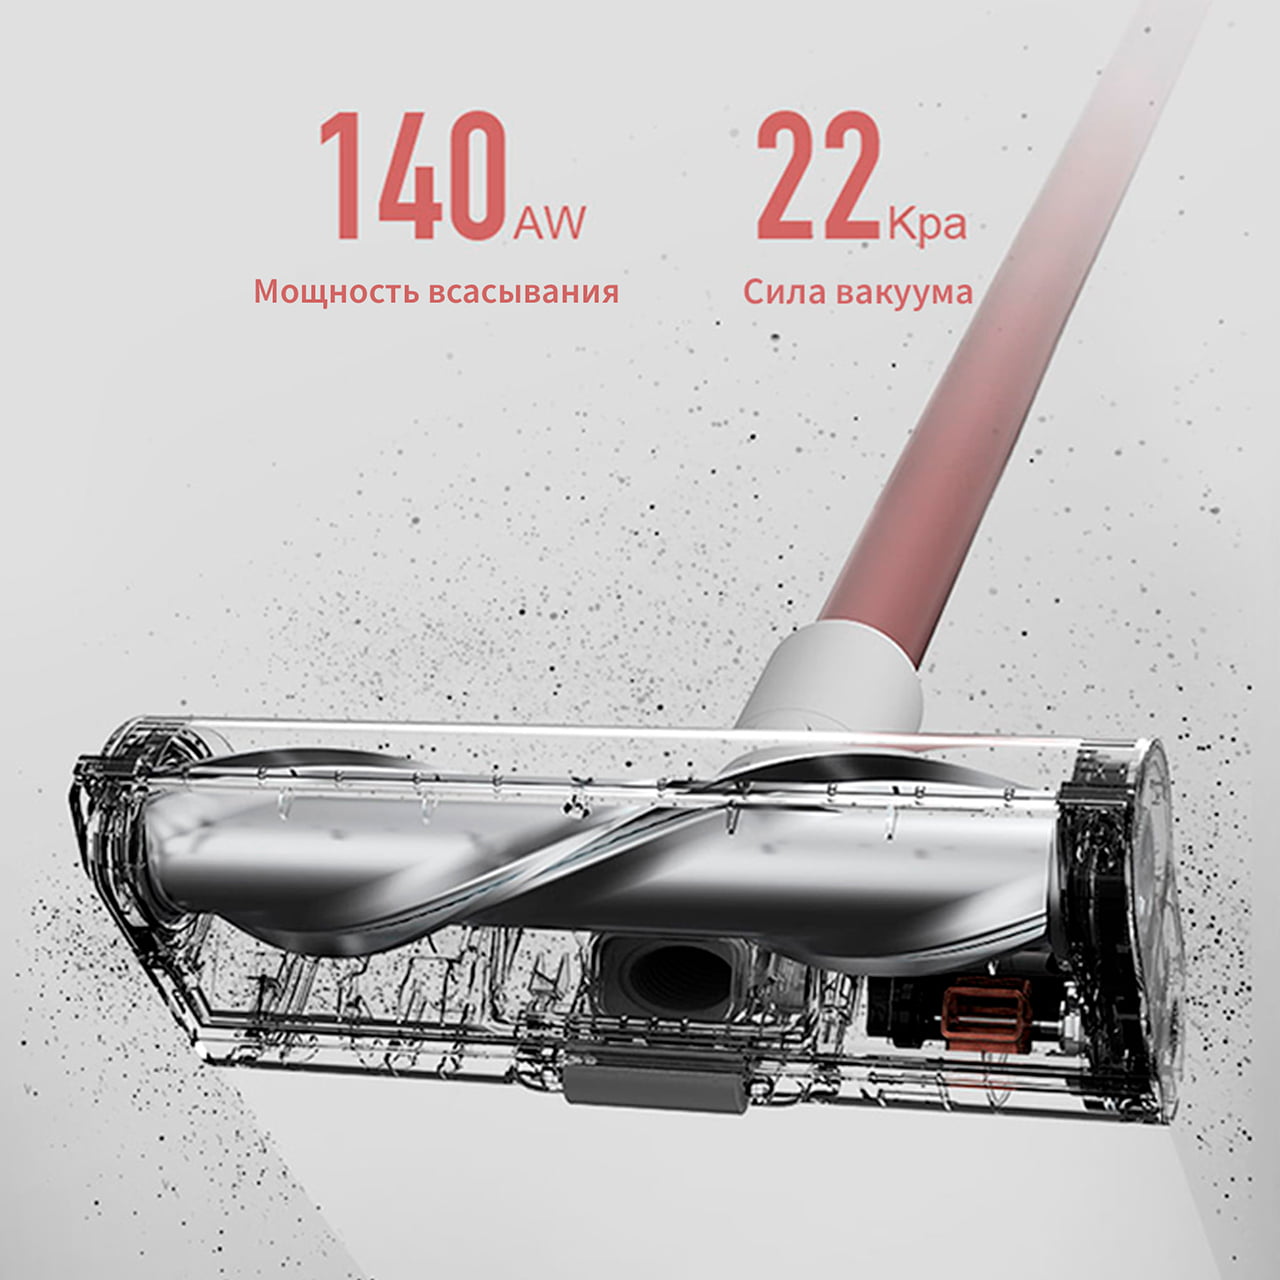 Мощность пылесоса Dreame XR Premium – целых 140 аВт или 22000 Па